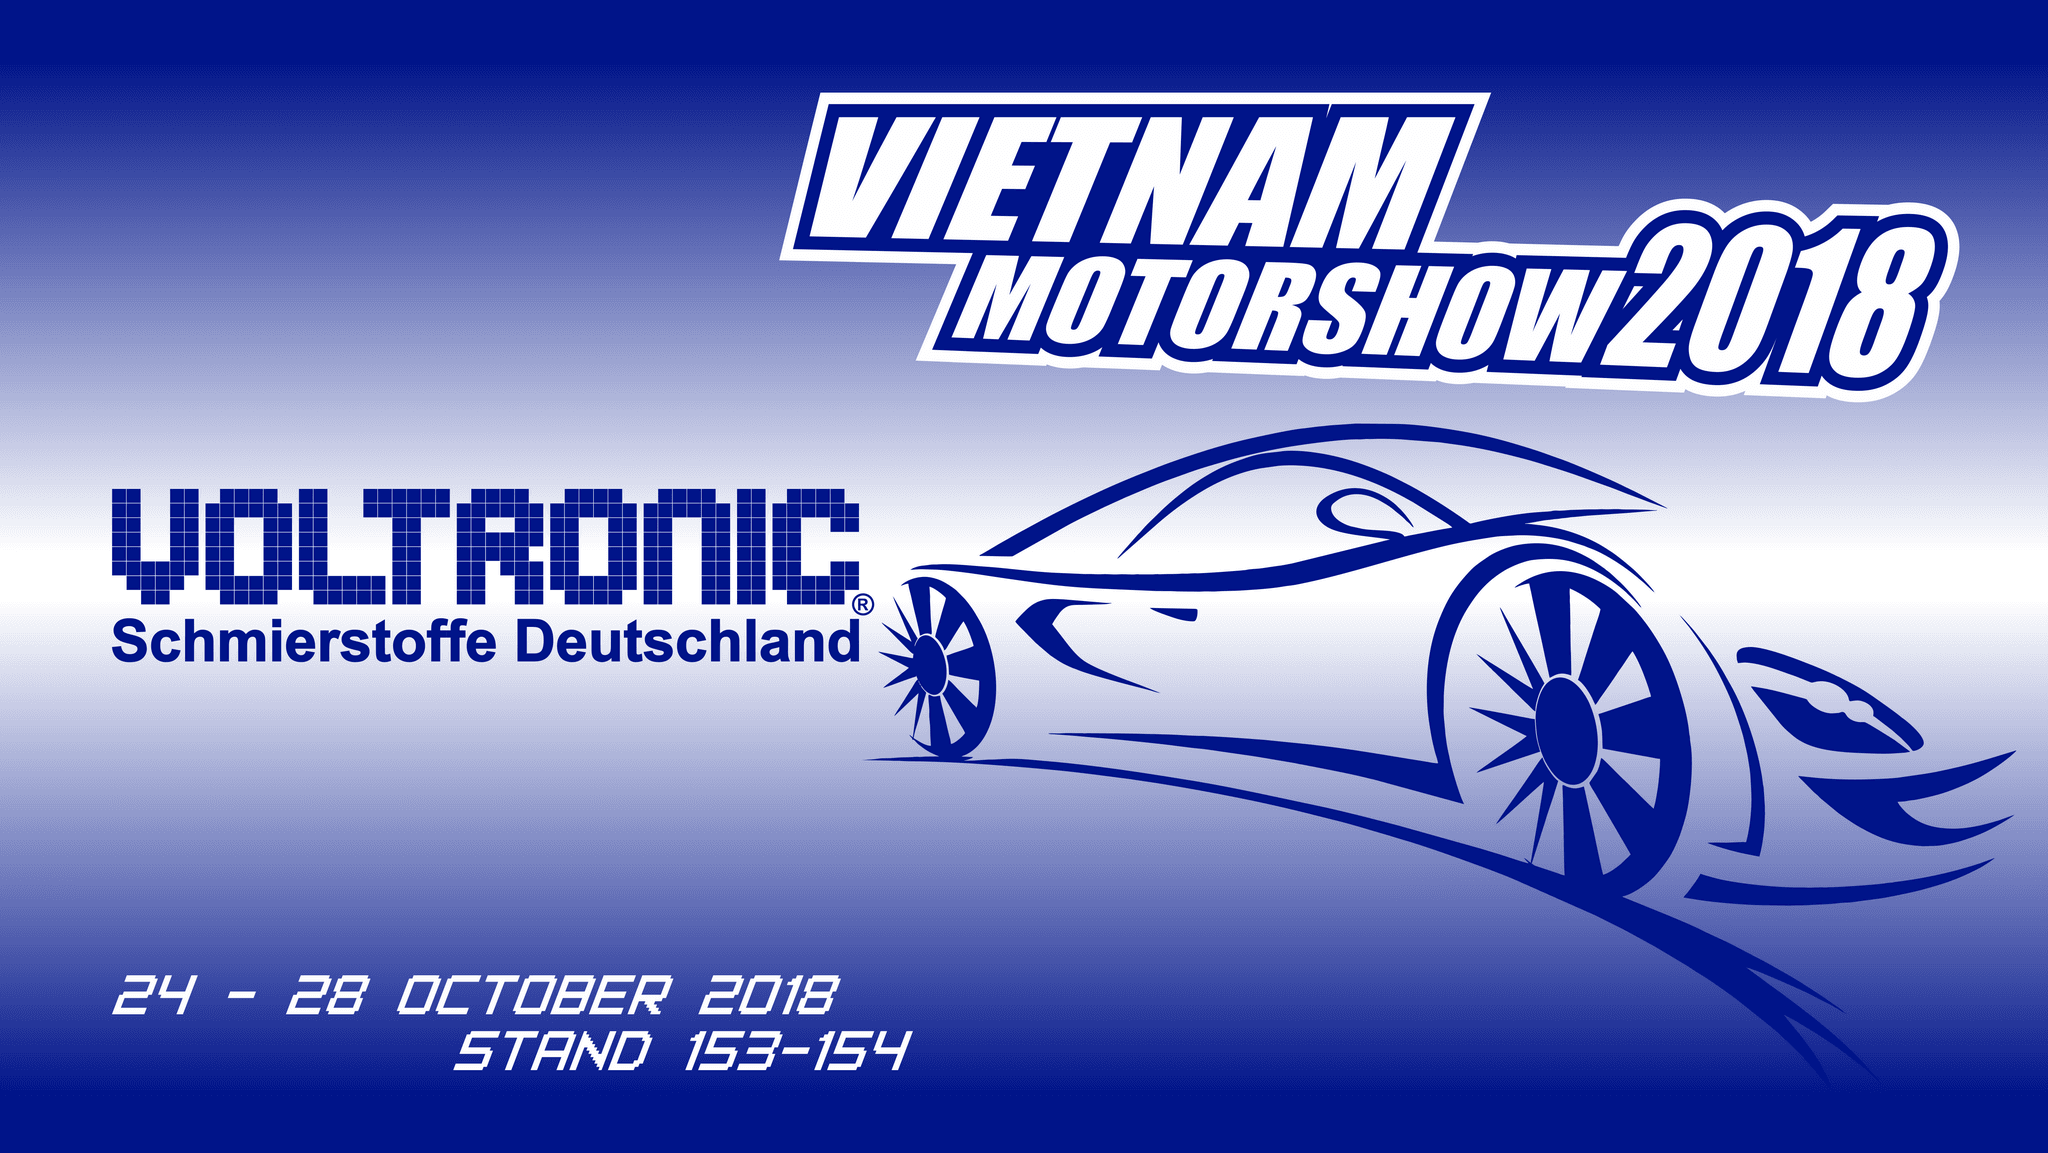 Vietnam Motorshow 2018